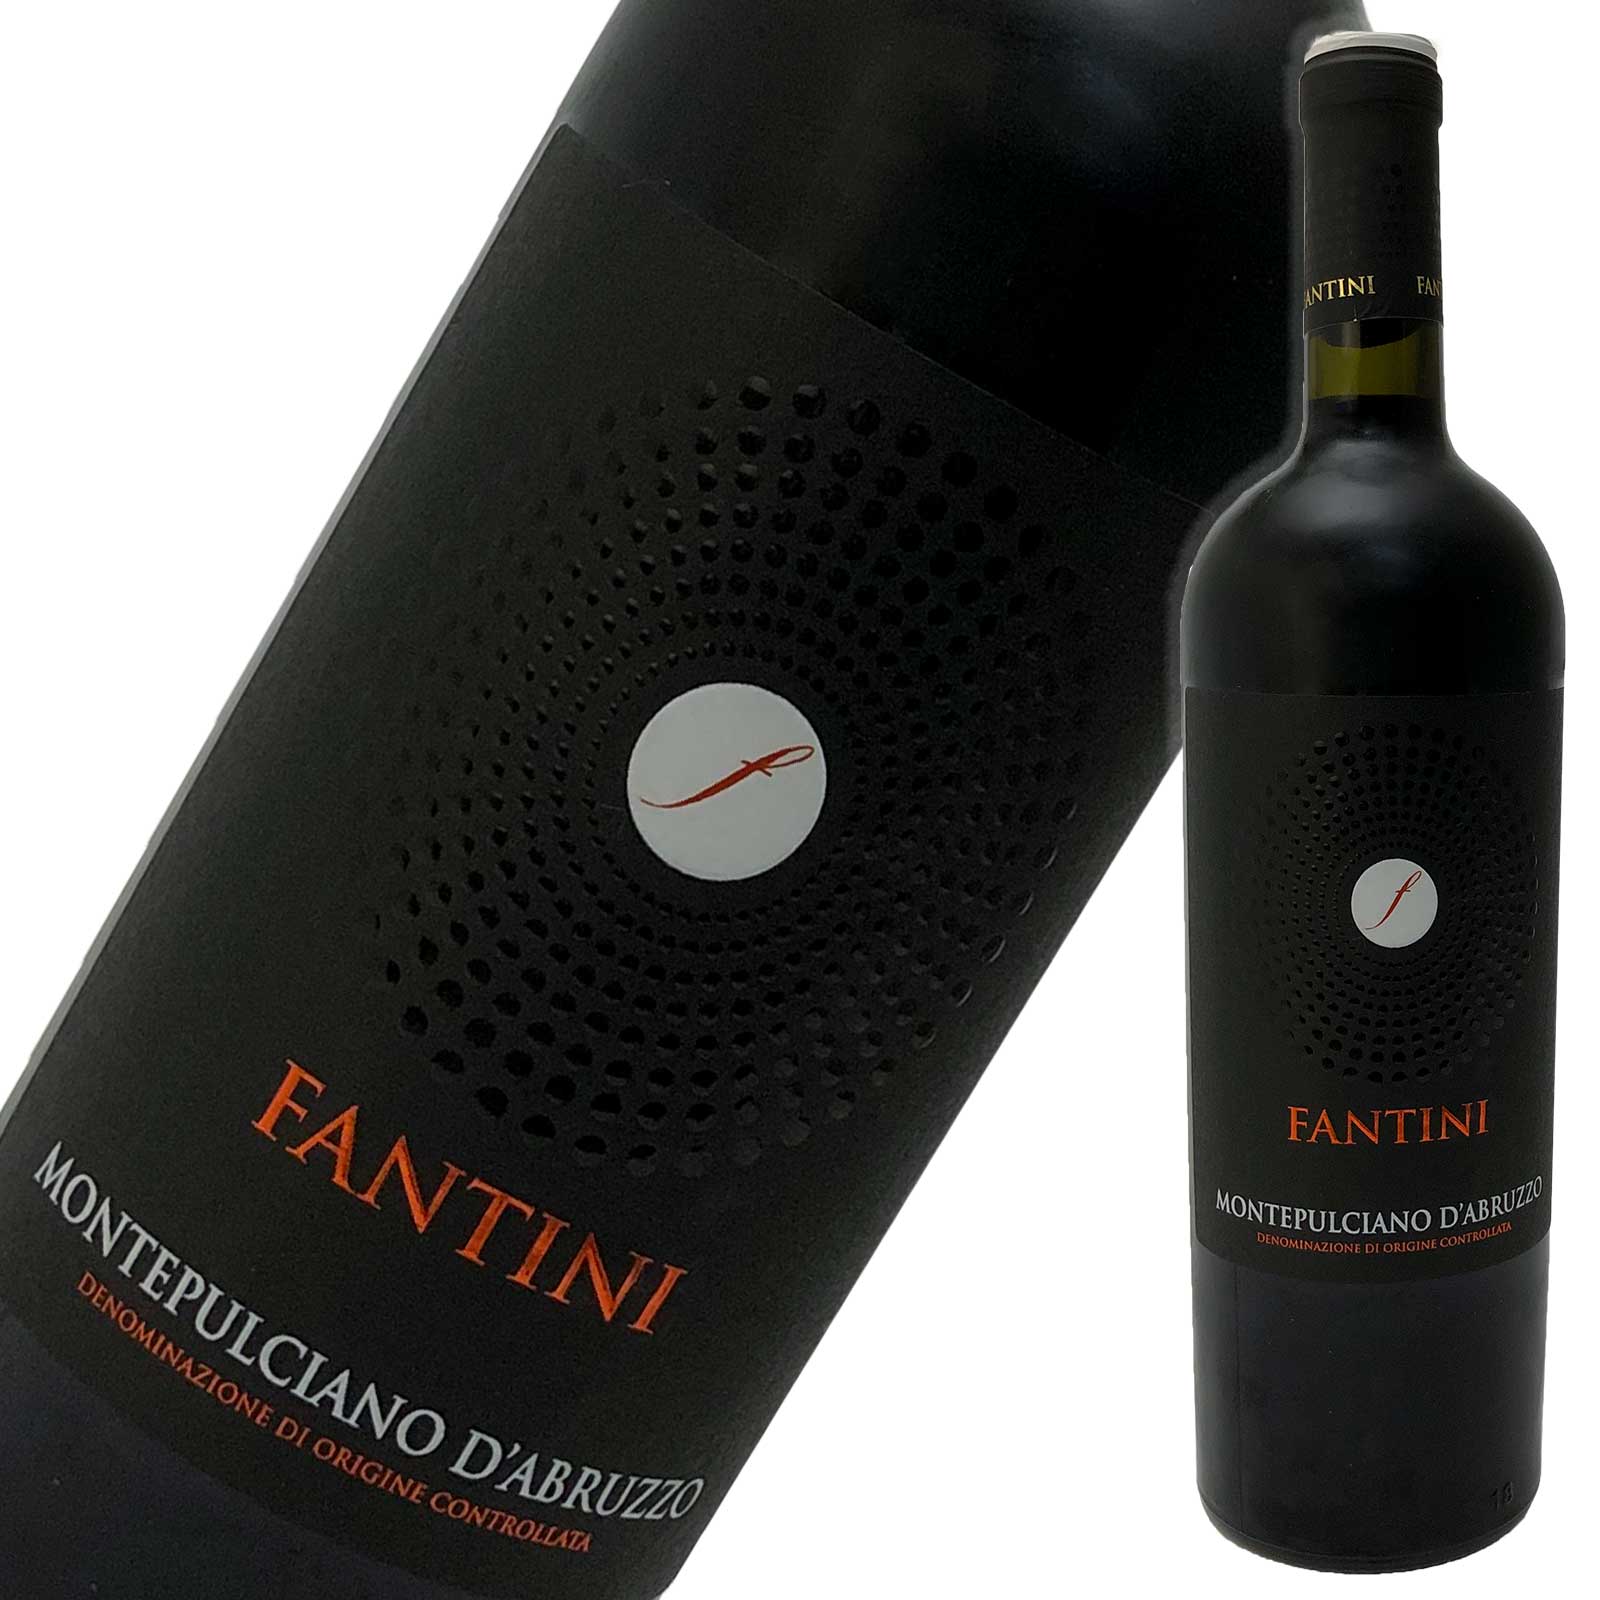 ファンティーニ モンテプルチアーノ ダブルッツォ [赤]　750ml Fantini Monteplciano d'Abruzzo ファンティーニ　モンテブルチャーノ　ダブルッツォ コクのあるミディアムボディ。 バランス良く、初心者の方にも飲みやすい味わい。 お食事にも合わせやすいワインです。 果実味がありまろやか、かつ、しっかりした味わい。 この価格帯としては、大変お買得の品。 おすすめイタリア産赤ワイン。 タイプ：赤ワイン　ミディアムボディ 内容量：750ml 産地　：イタリア 品種　：モンテプルチャーノ・ダブルッツォファンティーニ　モンテブルチャーノ　ダブルッツォ コストパフォーマンスの高いイタリア産赤ワイン、 コクのあるミディアムボディ。 バランス良く、飲みやすく、お食事にも合わせやすい。 果実味がありまろやか、かつ、しっかりした味わい。 大変お買得な、おすすめイタリア産赤ワイン。 タイプ 赤ワイン　ミディアムボディ 内容量 750ml 産地 イタリア 品種 モンテプルチャーノ・ダブルッツォ ◆　担当オススメの飲み方　◆ お食事にあわせて。 煮詰めたジャムのような香り、 ドルチェ、少し野性的なベリーフルーツの香。 イタリア料理にはもちろん、日本料理にも合わせて。 &nbsp; &nbsp;